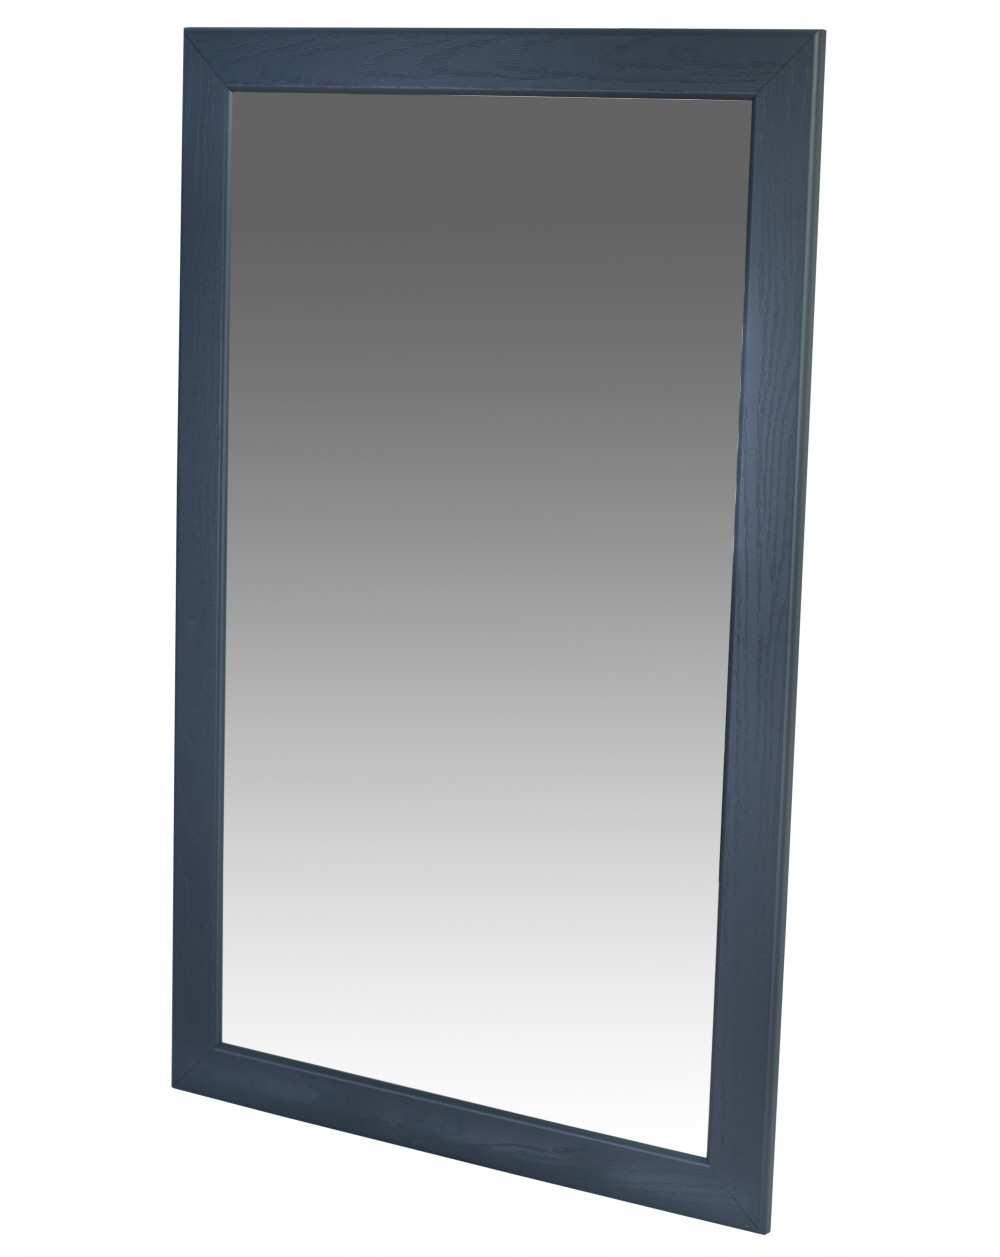 Зеркало навесное Берже 24-105 серый графит 105 см х 65 см фото Stolmag